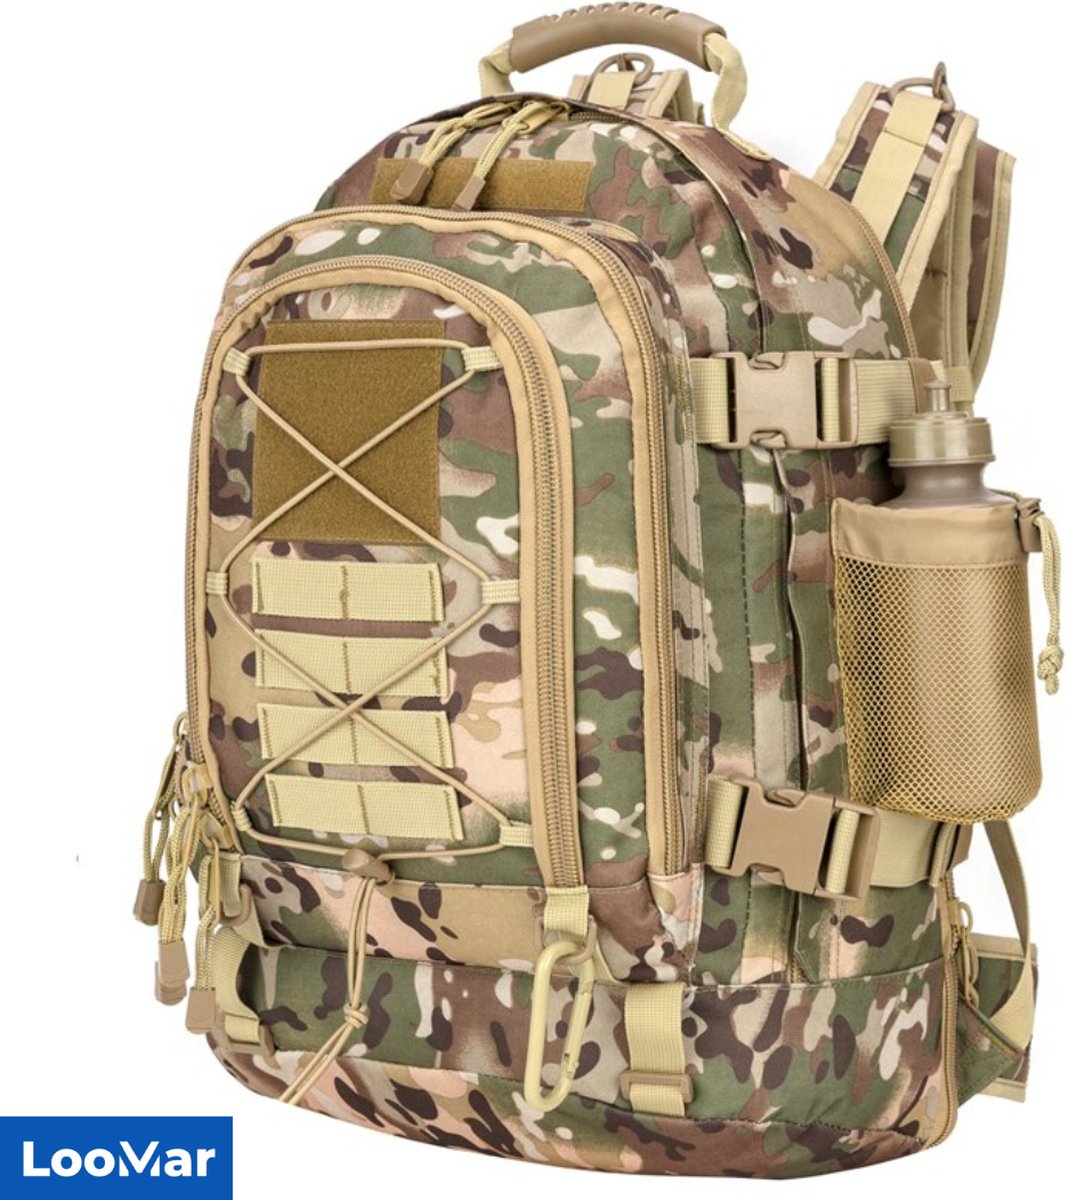 LooMar Backpack Groot - Militaire Rugzak - 50-60 liter - Groen Camouflage - Waterdicht - Dames – Heren – Geschikt voor Laptop, Reizen, School